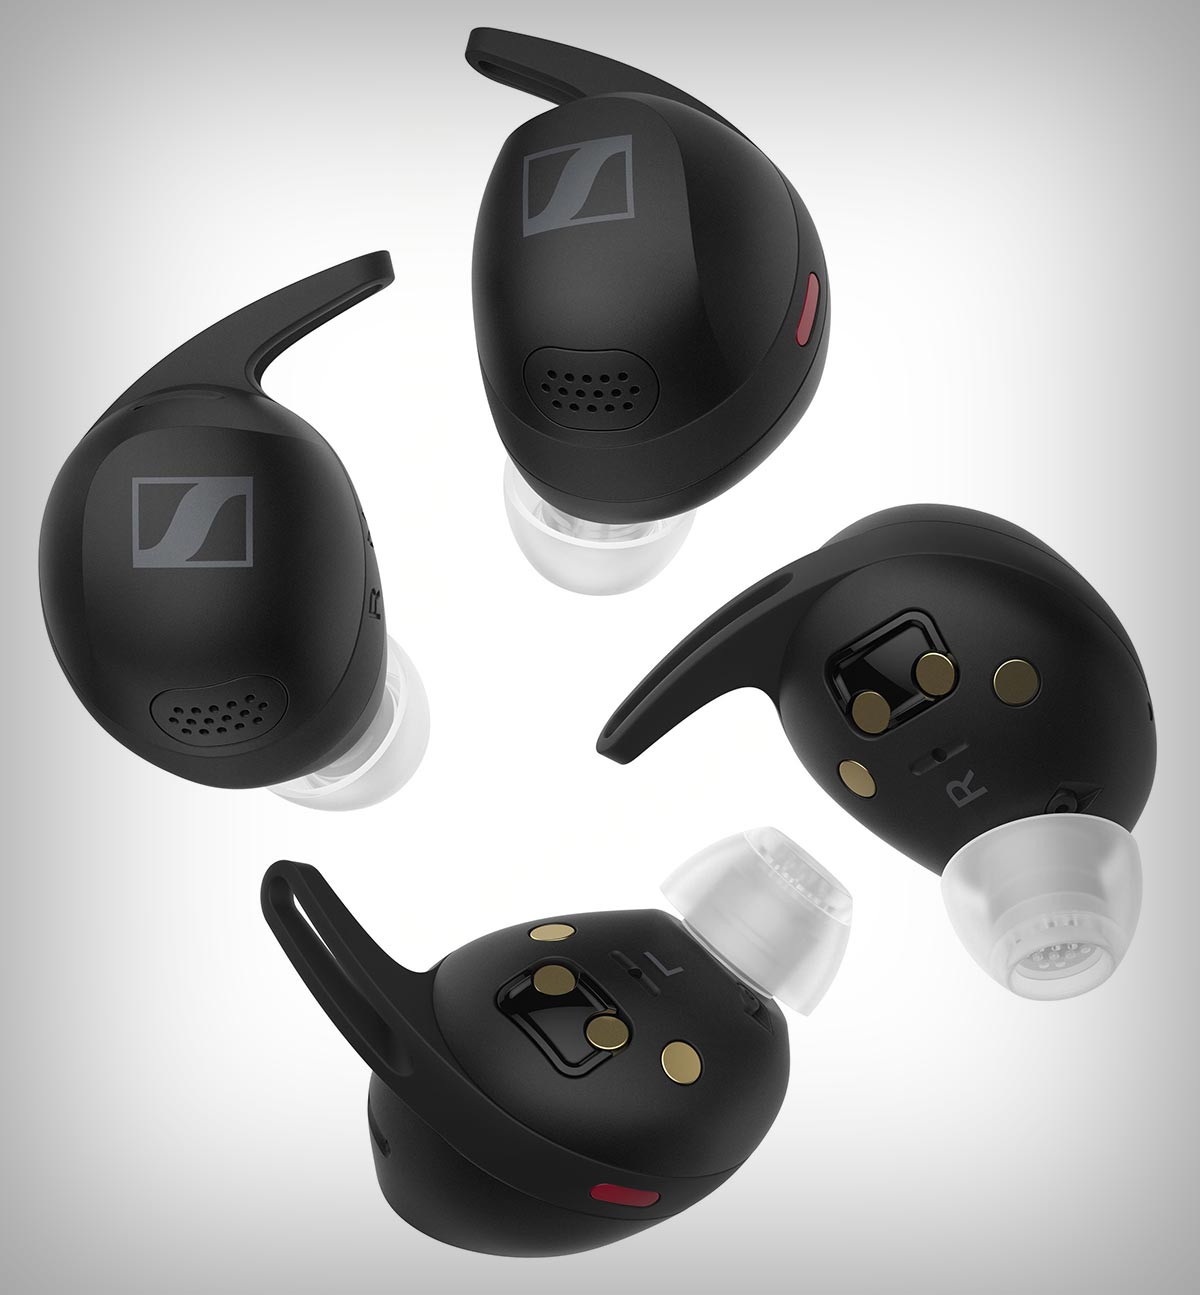 Sennheiser Momentum Sport, le prime cuffie wireless con sensore di frequenza cardiaca e temperatura ad arrivare sul mercato